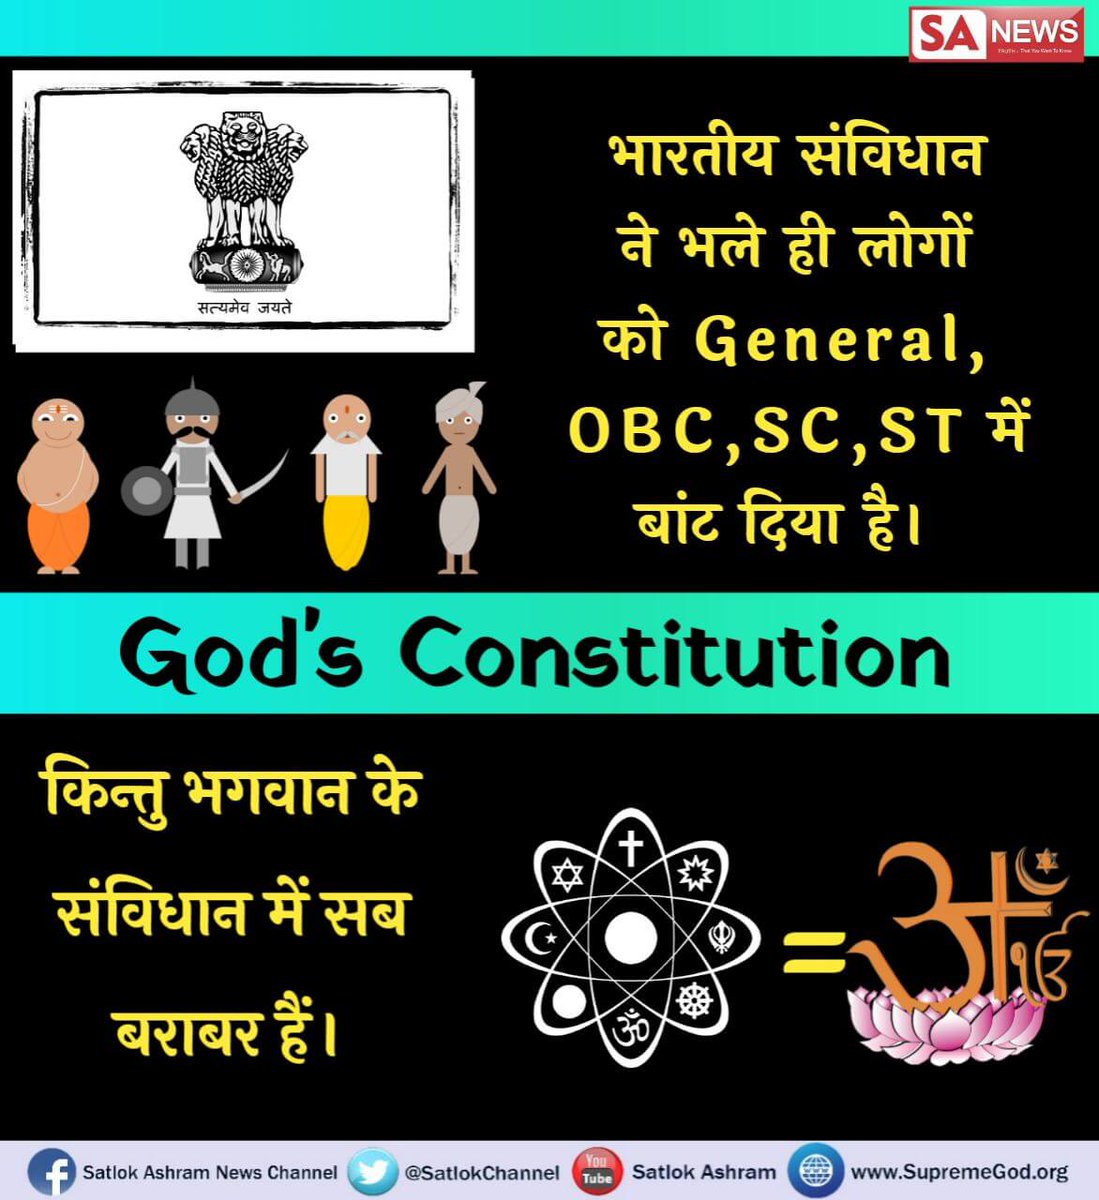 #परमात्मा_का_संविधान
भारतीय संविधान ने भले ही लोगों को General, OBC, SC, ST में बांट दिया है।
किन्तु भगवान के संविधान में सब बराबर हैं।
#GodMorningSaturday
📺अधिक जानकारी के लिए कृपया साधना चैनल शाम 07:30 बजे देखें।